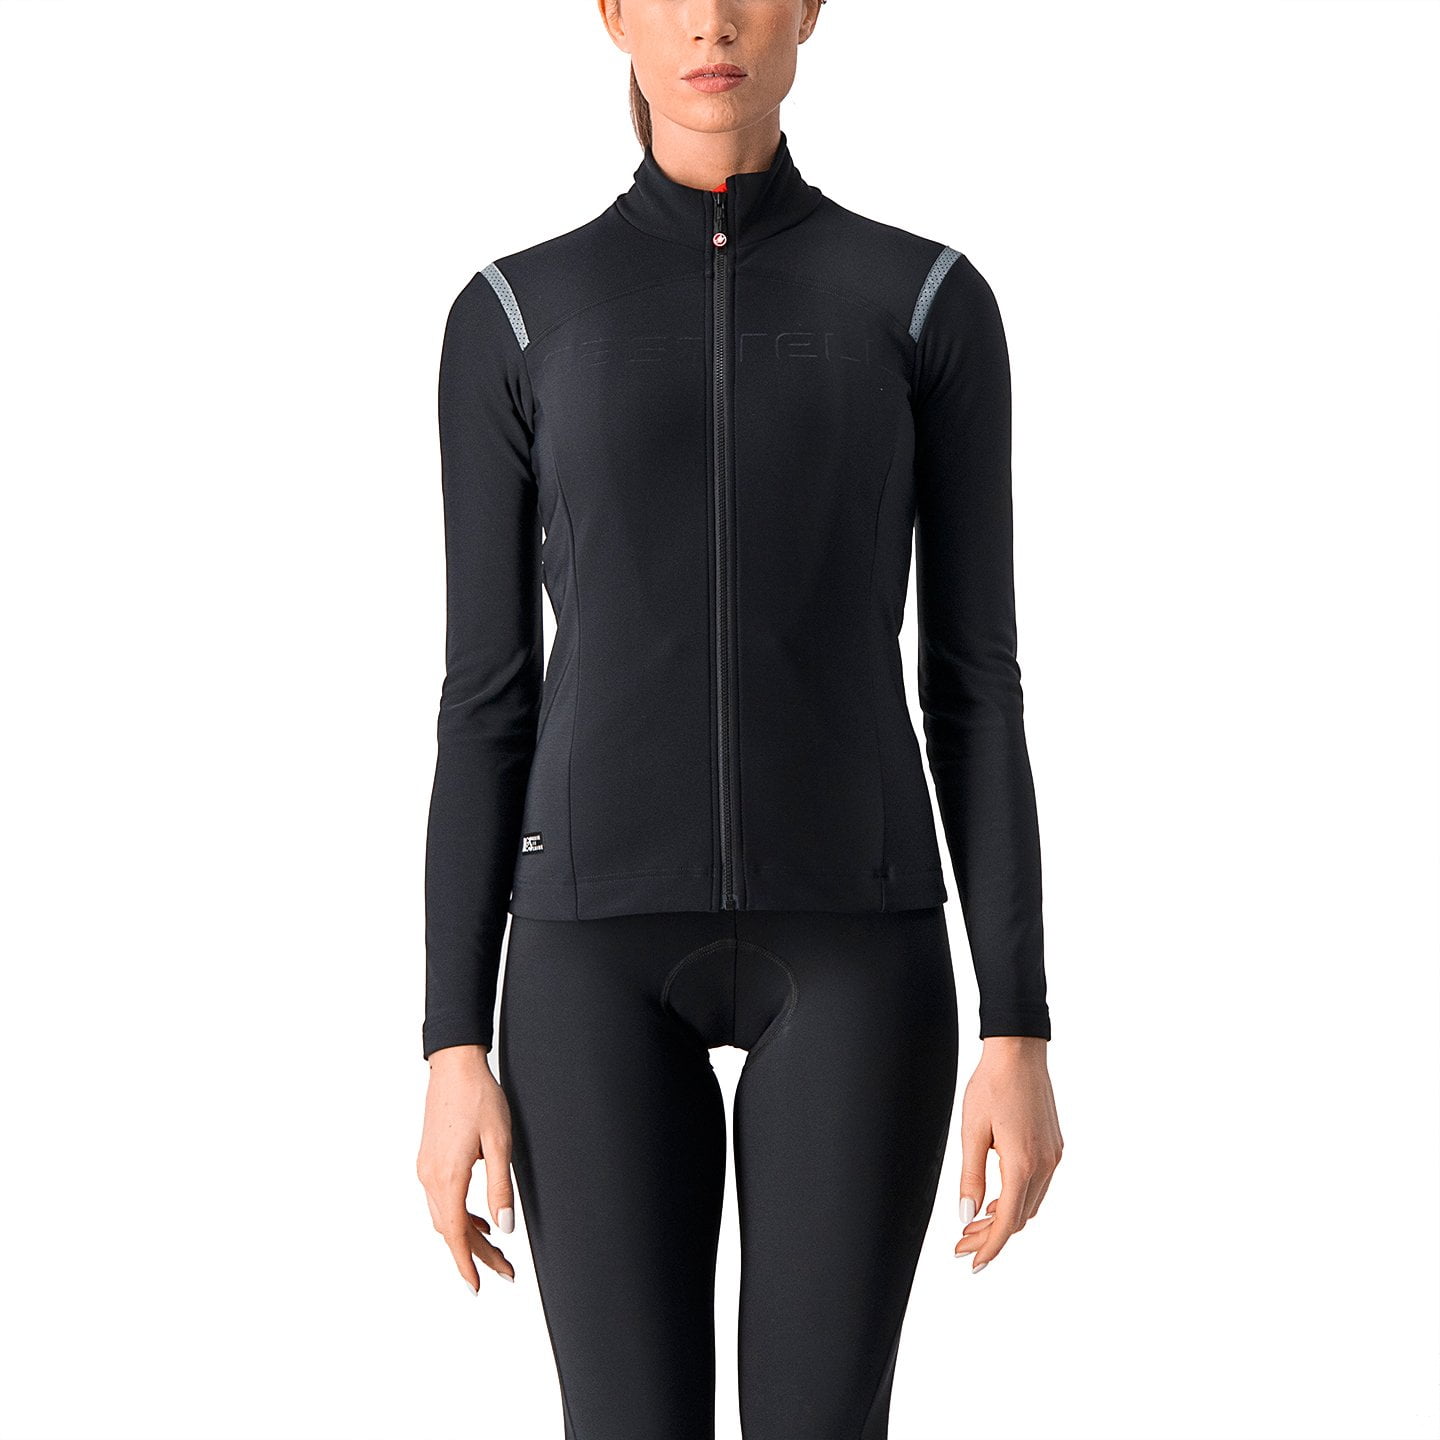 CASTELLI Tutto Nano RoS Women’s Light Jacket Light Jacket, size M, Bike jacket, Cycling clothing